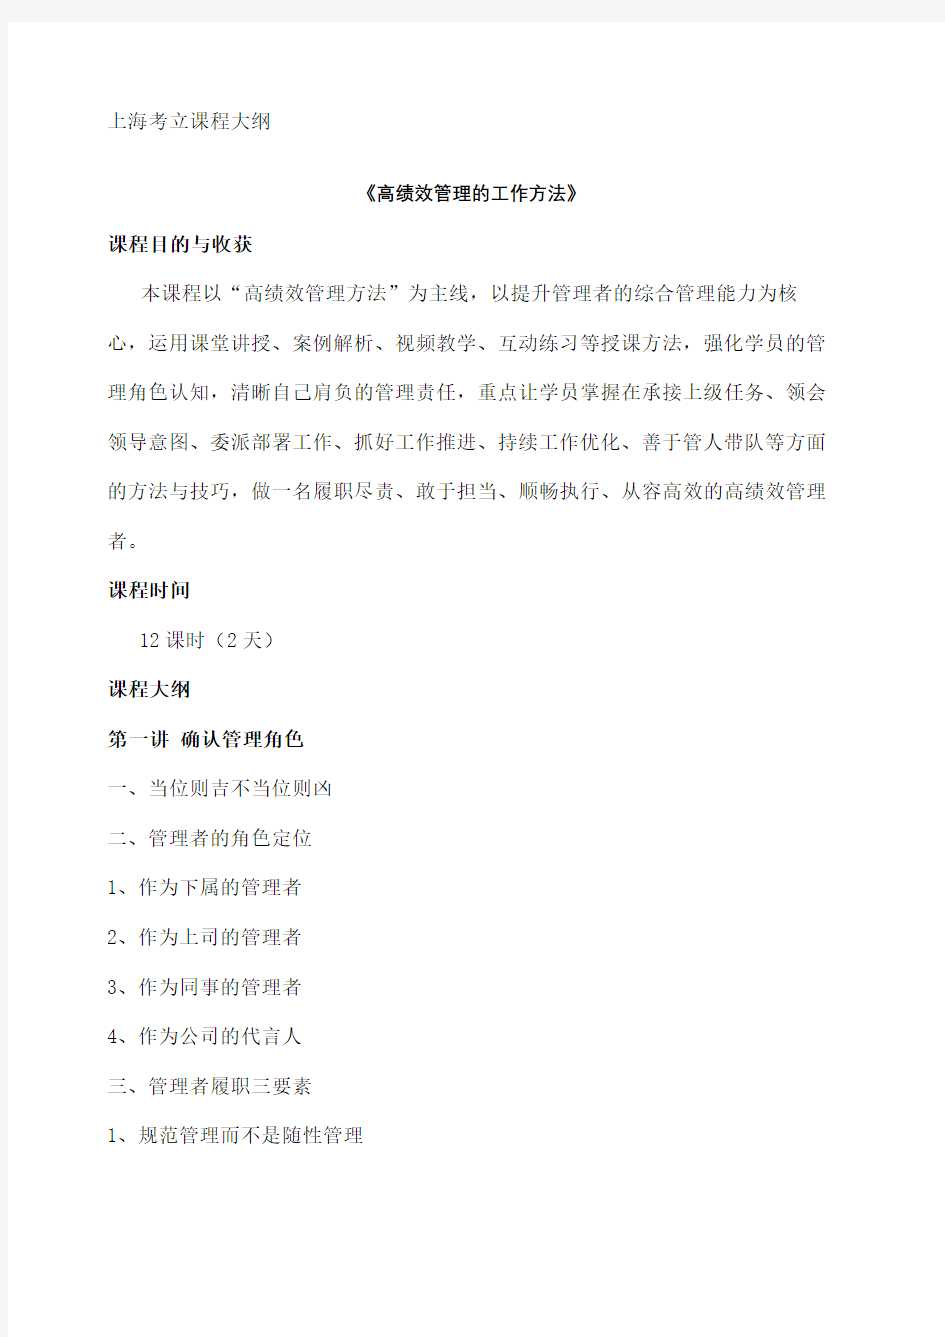 宋振杰老师上海考立高绩效管理的工作方法课程大纲